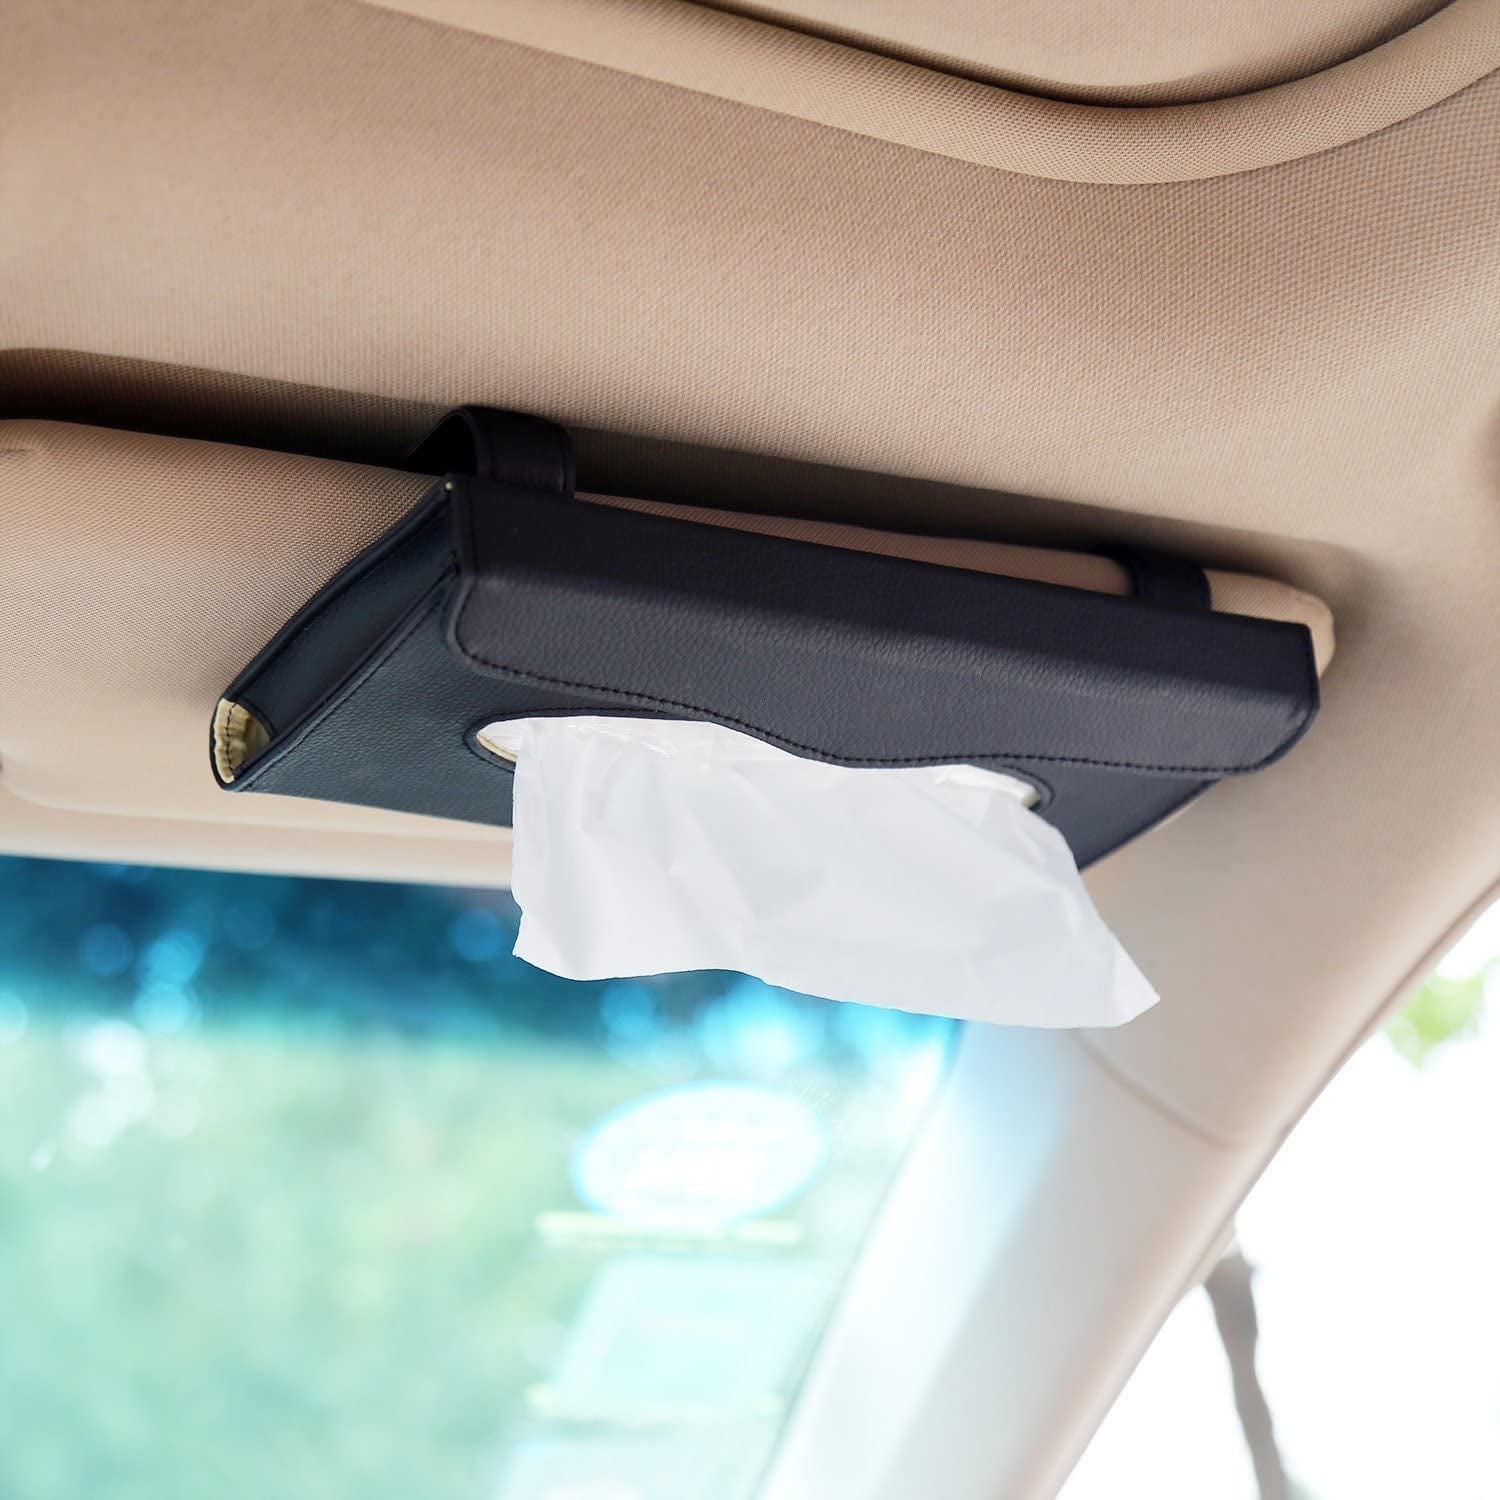 the black tissue dispenser on a car visor